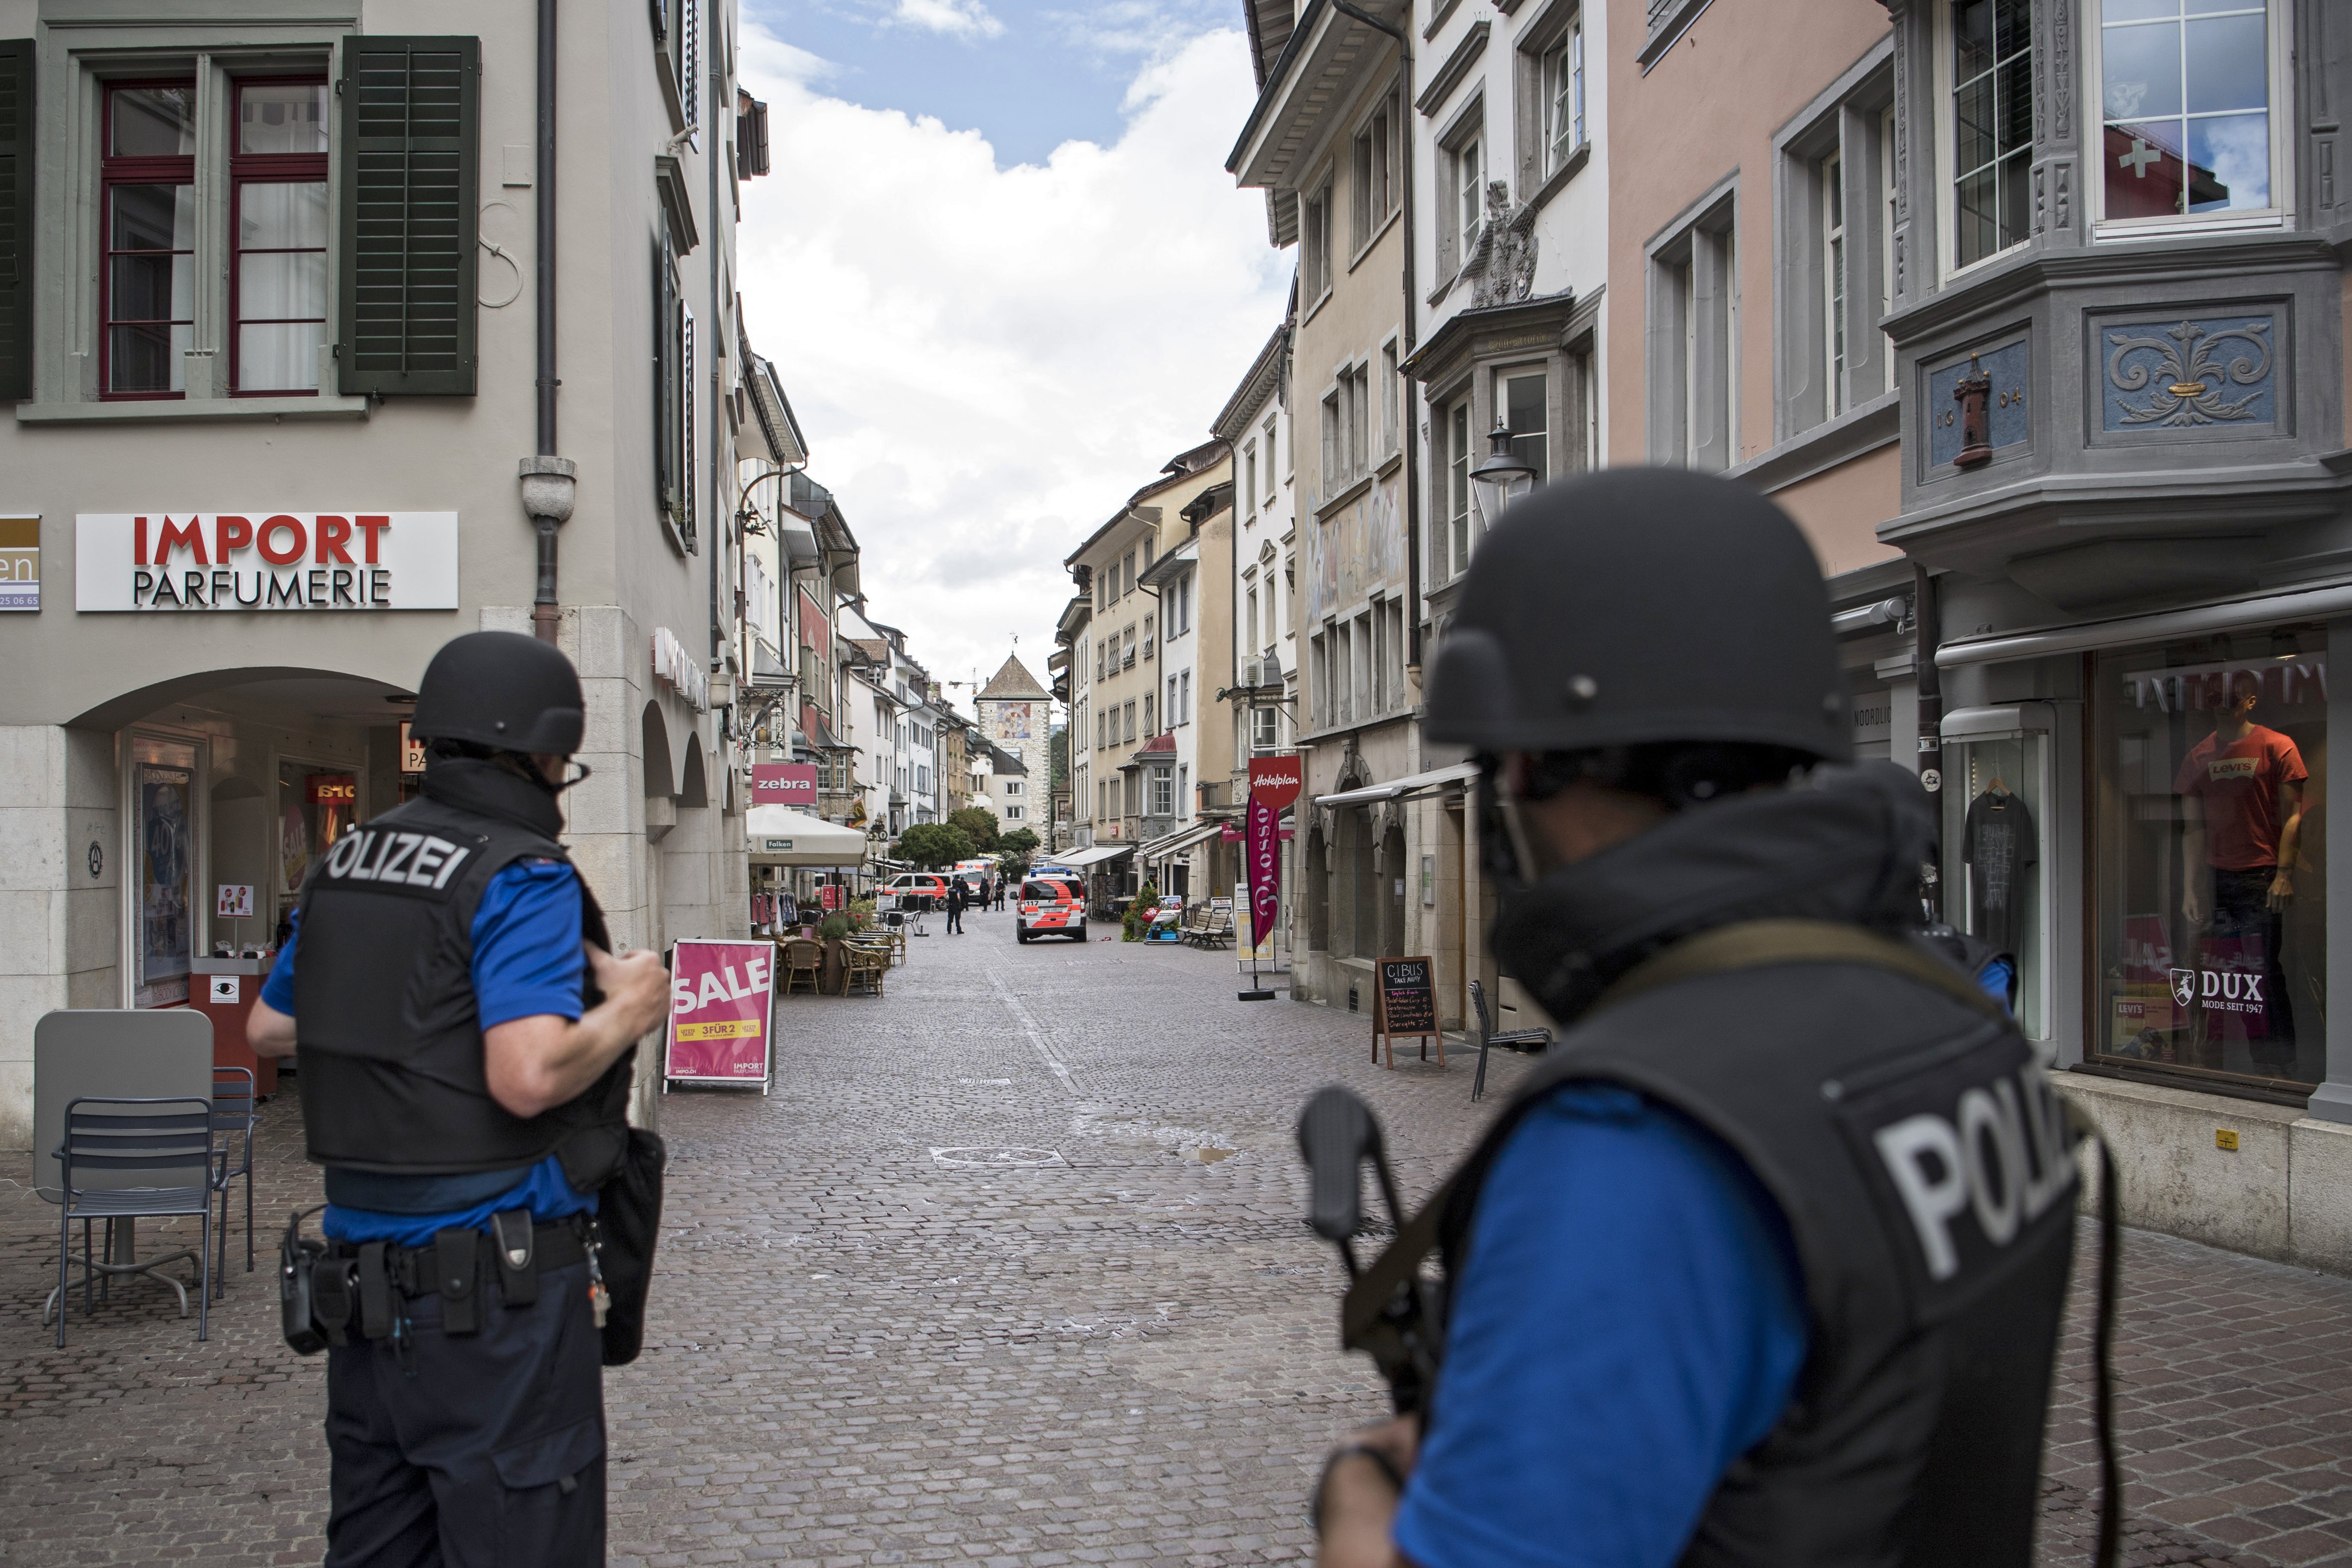 Ταυτοποιήθηκε ο δράστης της επίθεσης με αλυσοπρίονο σε ελβετική πόλη